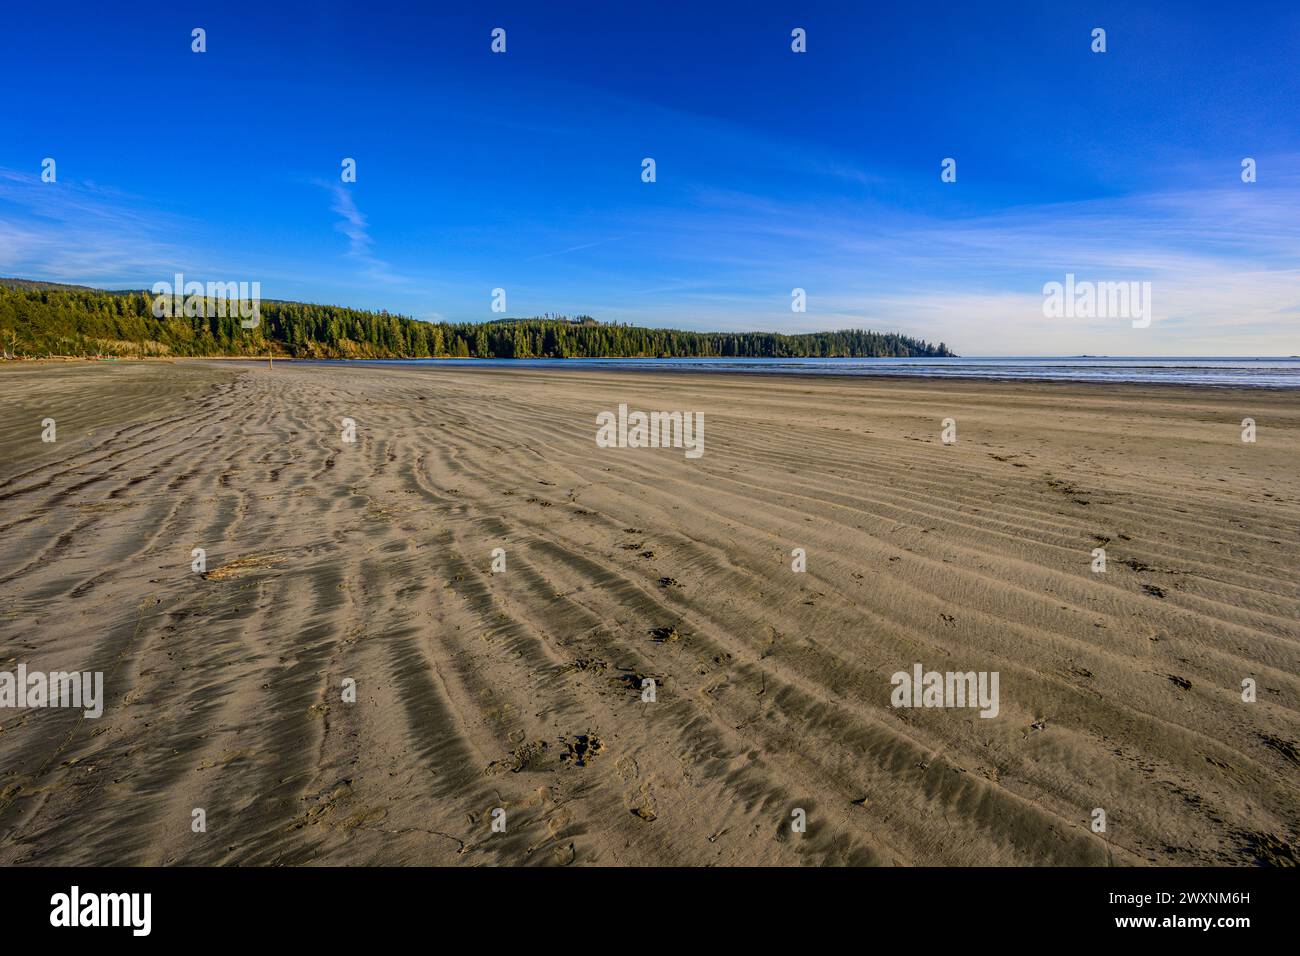 L'incontaminata spiaggia di sabbia alla testa di Pachena Bay sull'Isola di Vancouver, Canada Foto Stock